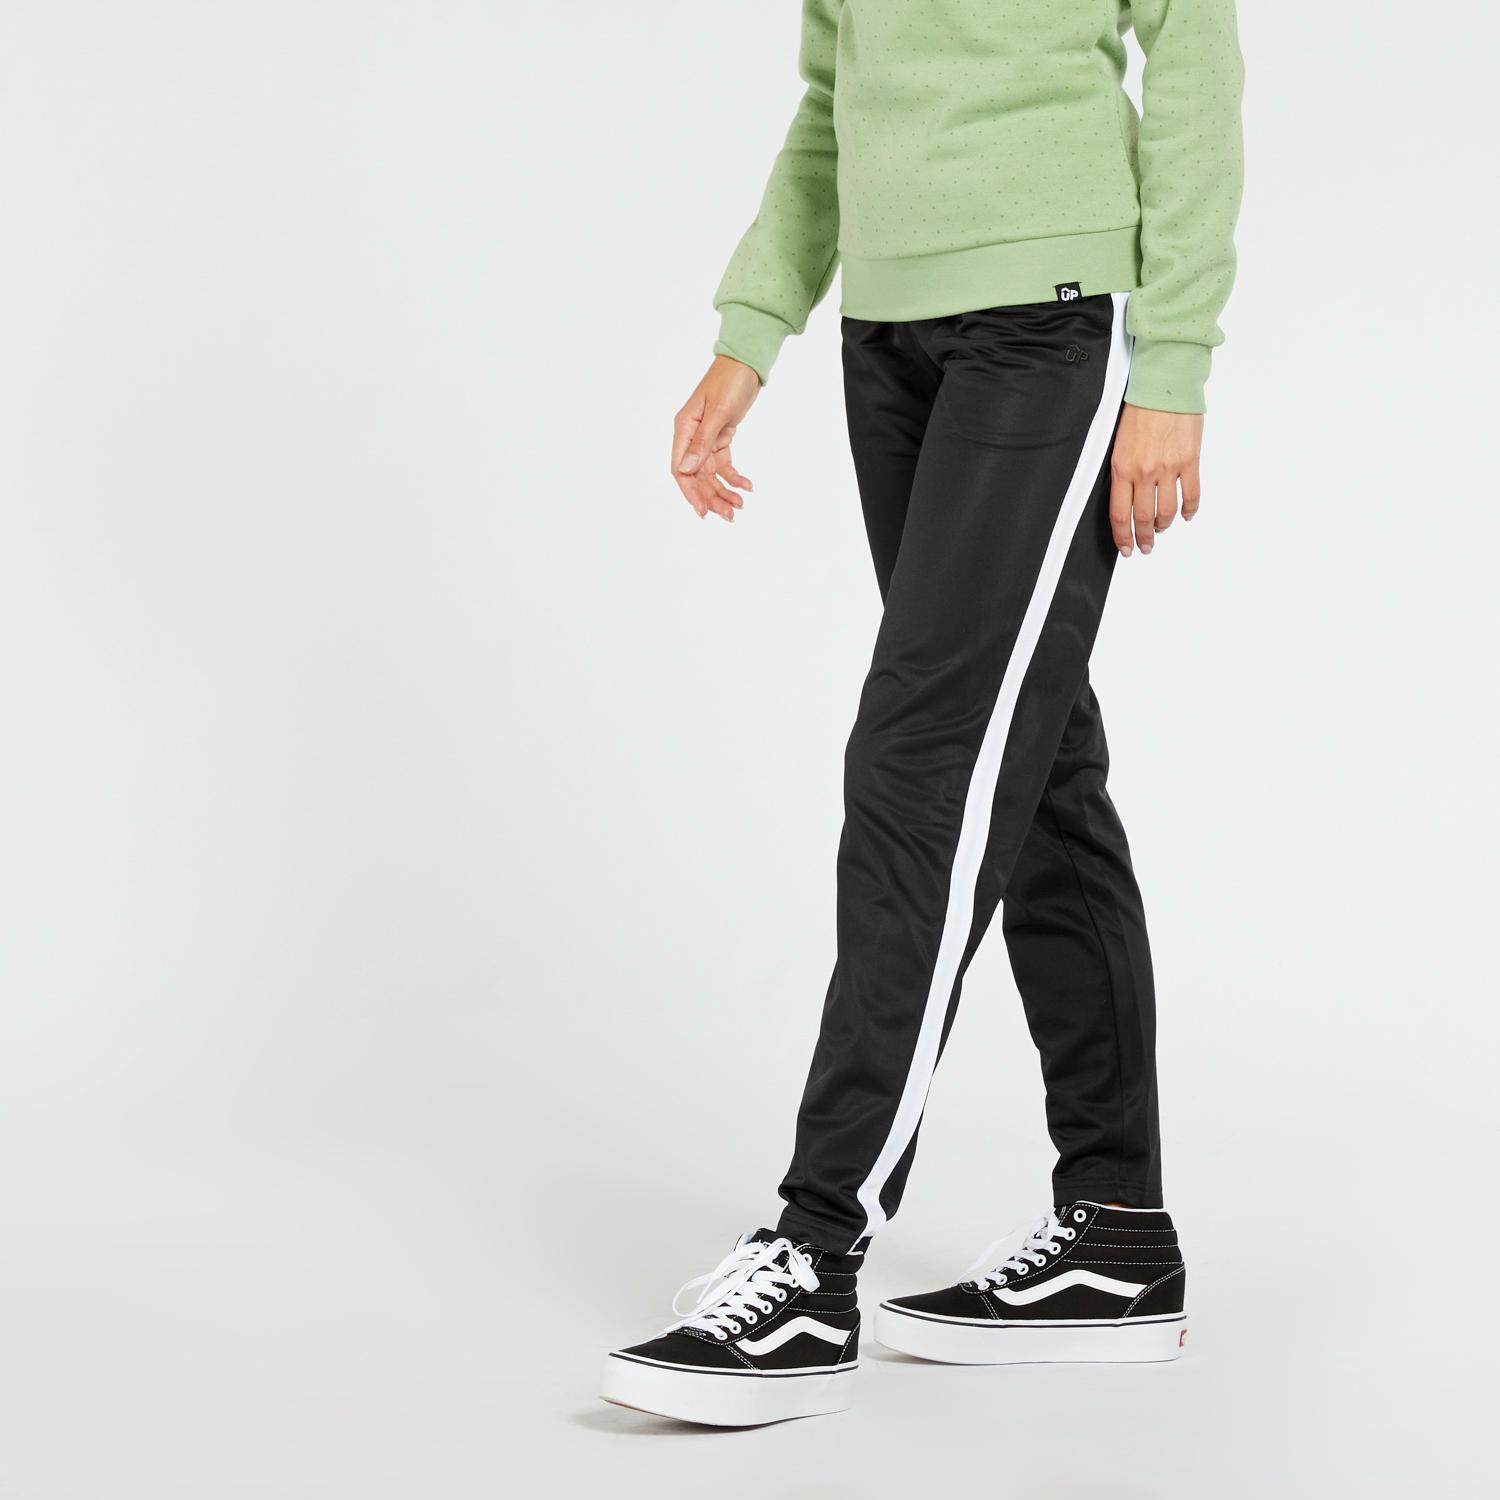 Up Basics - Noir- Pantalon de survêtement femme sports taille S